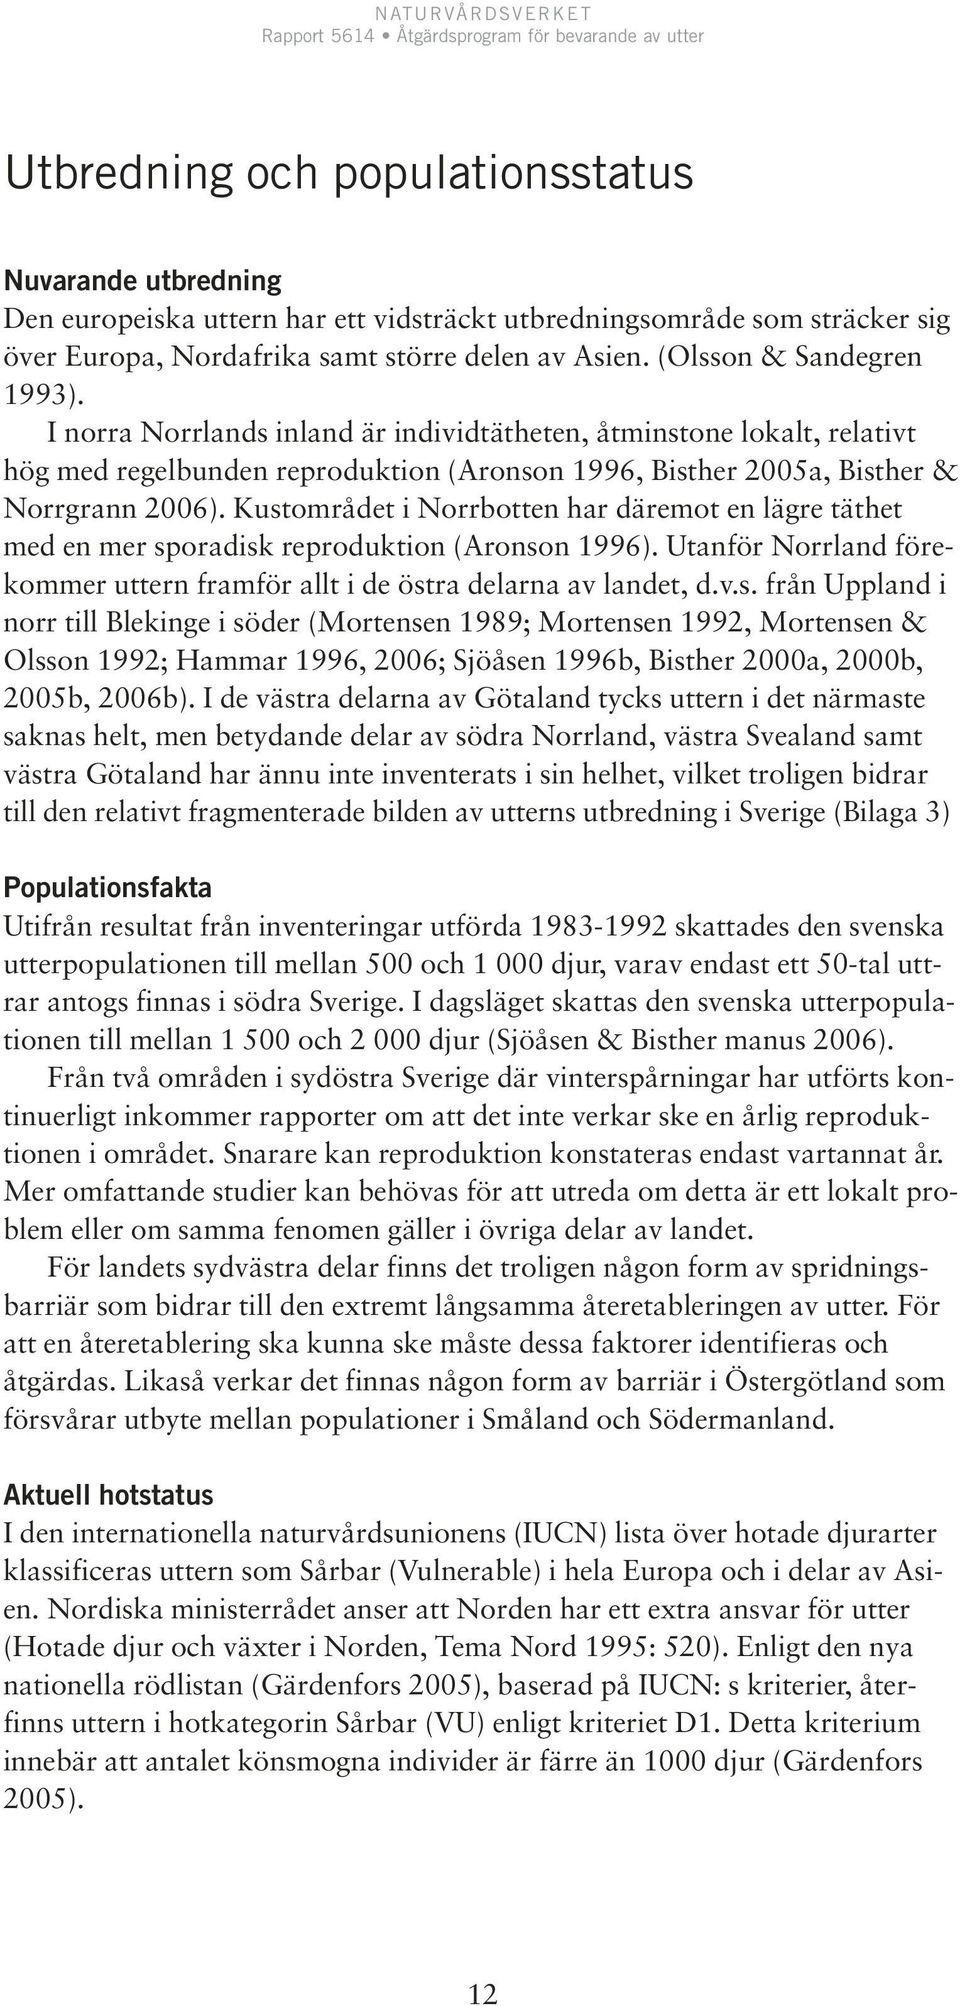 Kustområdet i Norrbotten har däremot en lägre täthet med en mer sporadisk reproduktion (Aronson 1996). Utanför Norrland förekommer uttern framför allt i de östra delarna av landet, d.v.s. från Uppland i norr till Blekinge i söder (Mortensen 1989; Mortensen 1992, Mortensen & Olsson 1992; Hammar 1996, 2006; Sjöåsen 1996b, Bisther 2000a, 2000b, 2005b, 2006b).